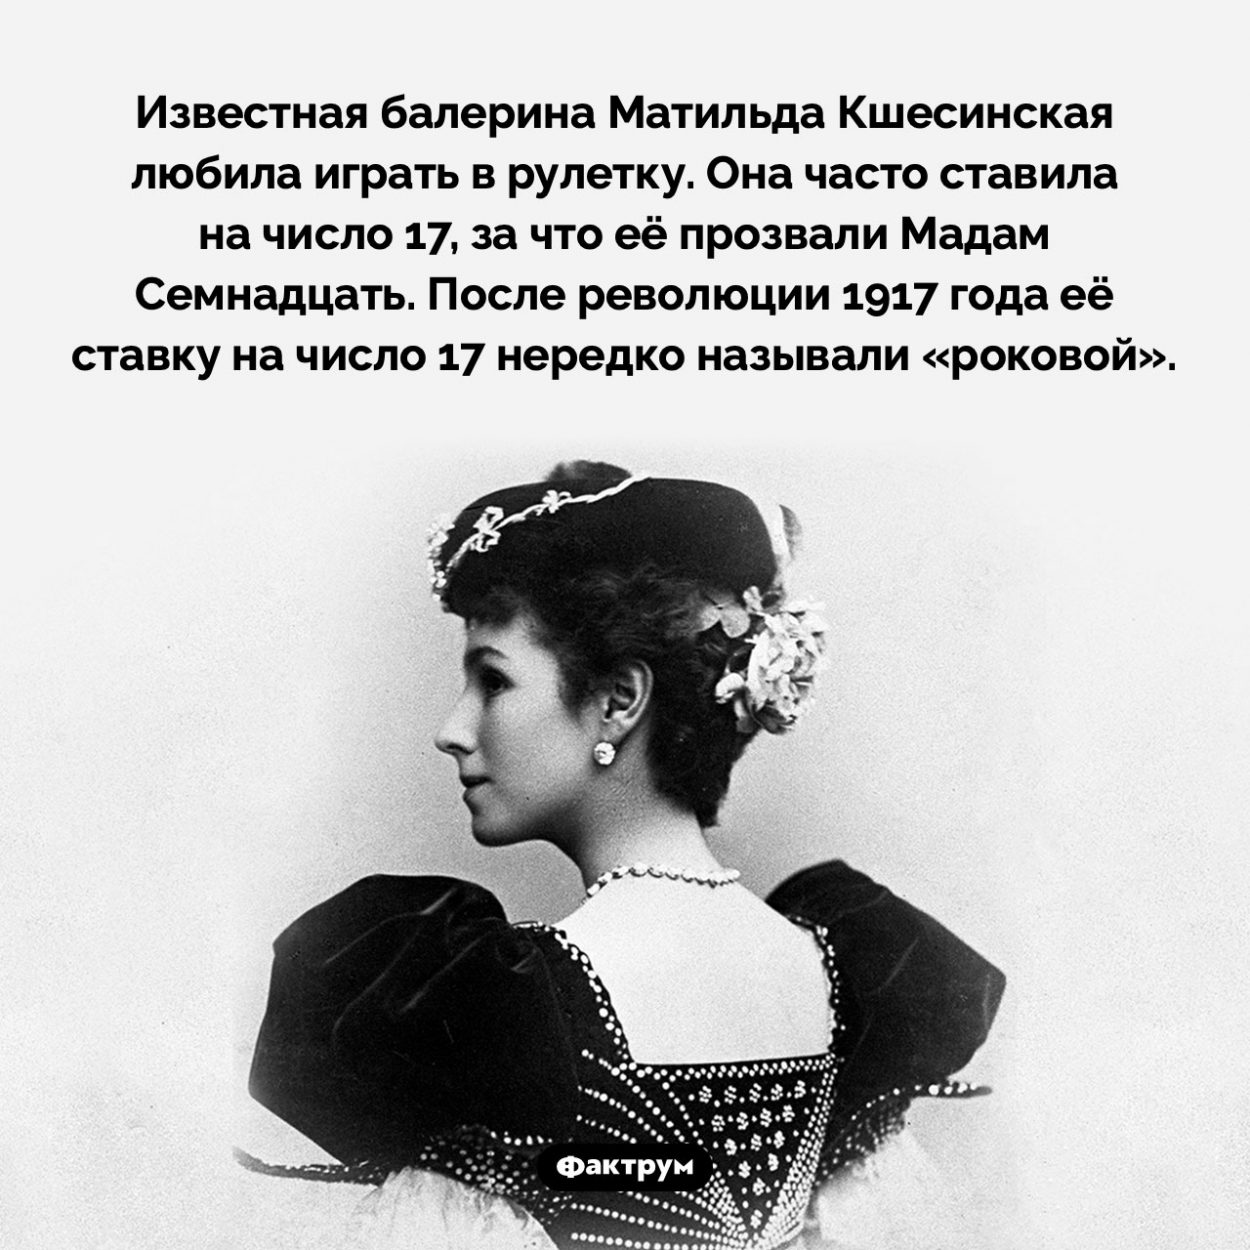 Мадам Семнадцать. Известная балерина Матильда Кшесинская любила играть в рулетку. Она часто ставила на число 17, за что её прозвали Мадам Семнадцать. После революции 1917 года её ставку на число 17 нередко называли «роковой».